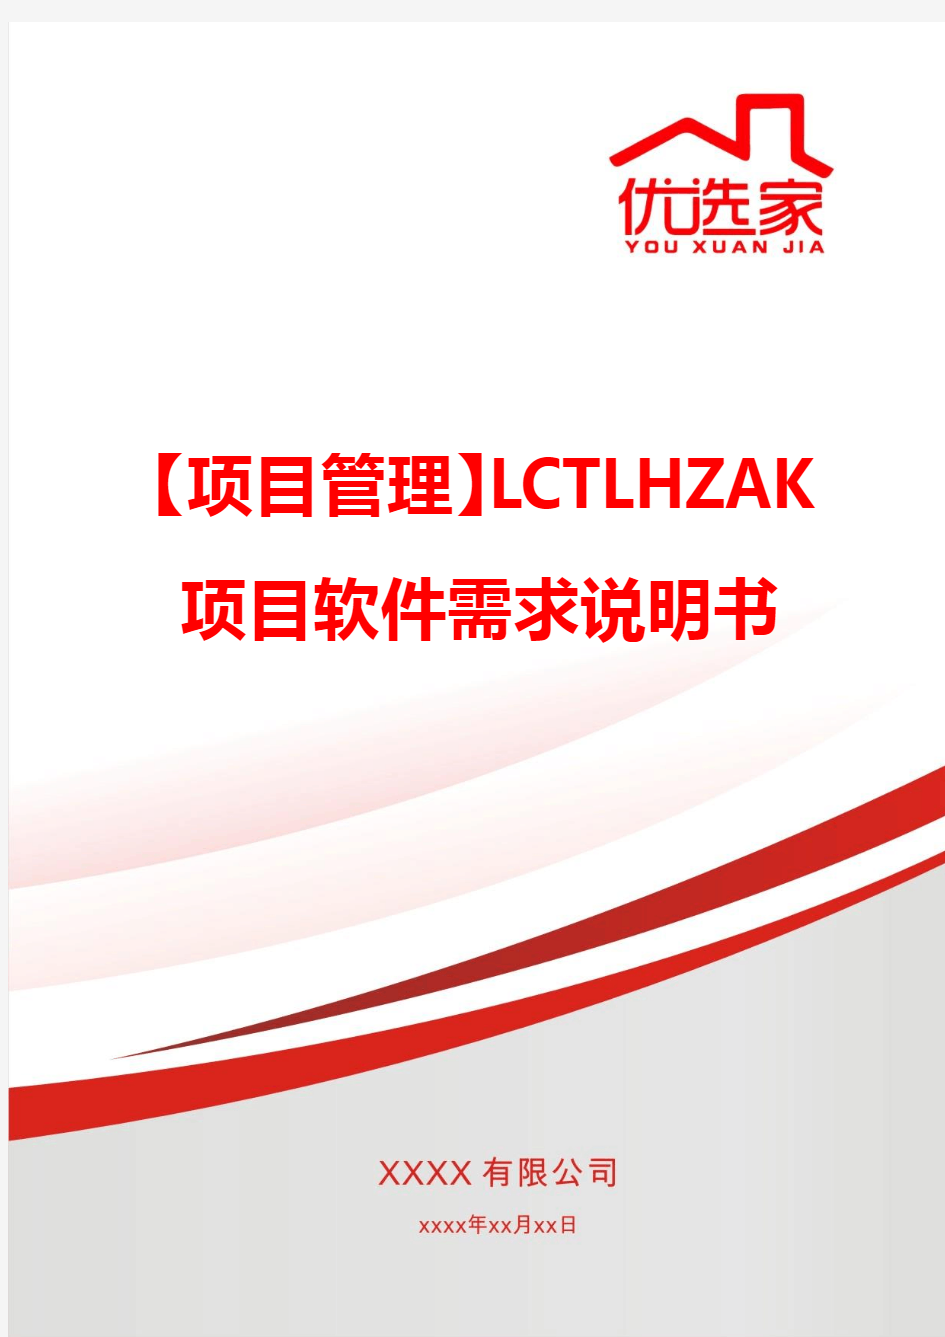 【项目管理】LCTLHZAK项目软件需求说明书